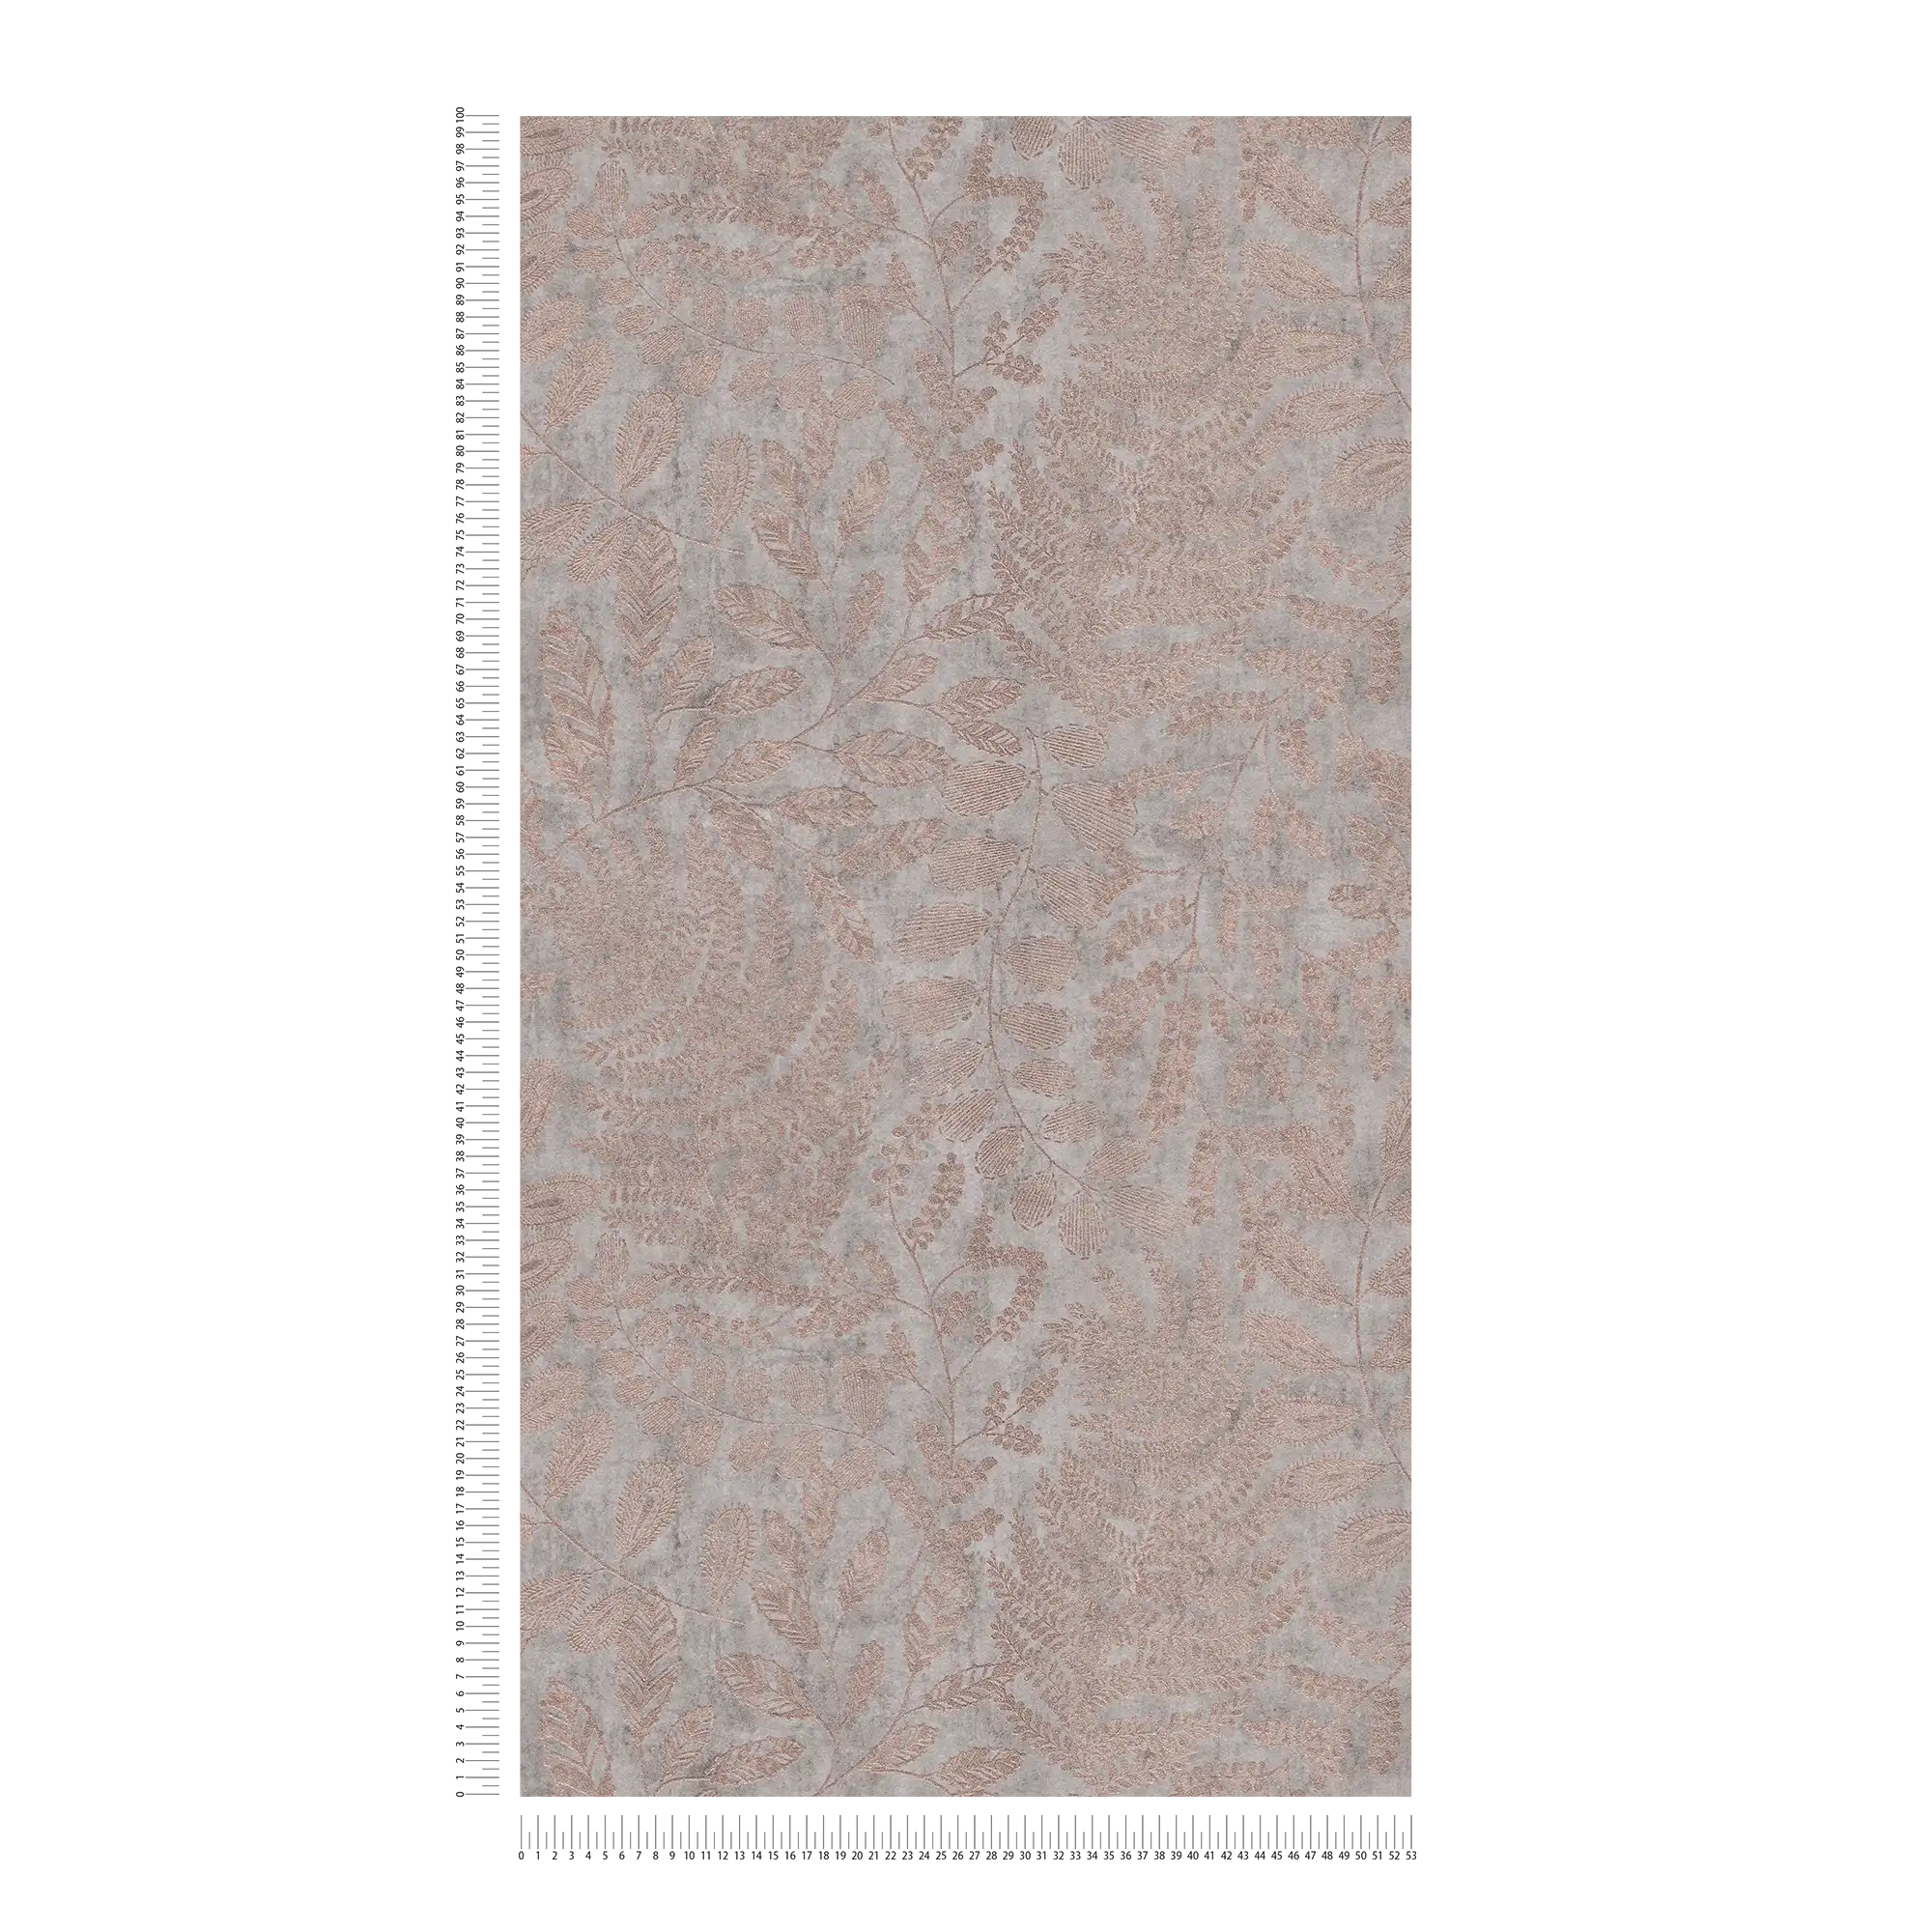             Metallic behangblad patroon in skandi stijl - grijs, metallic
        